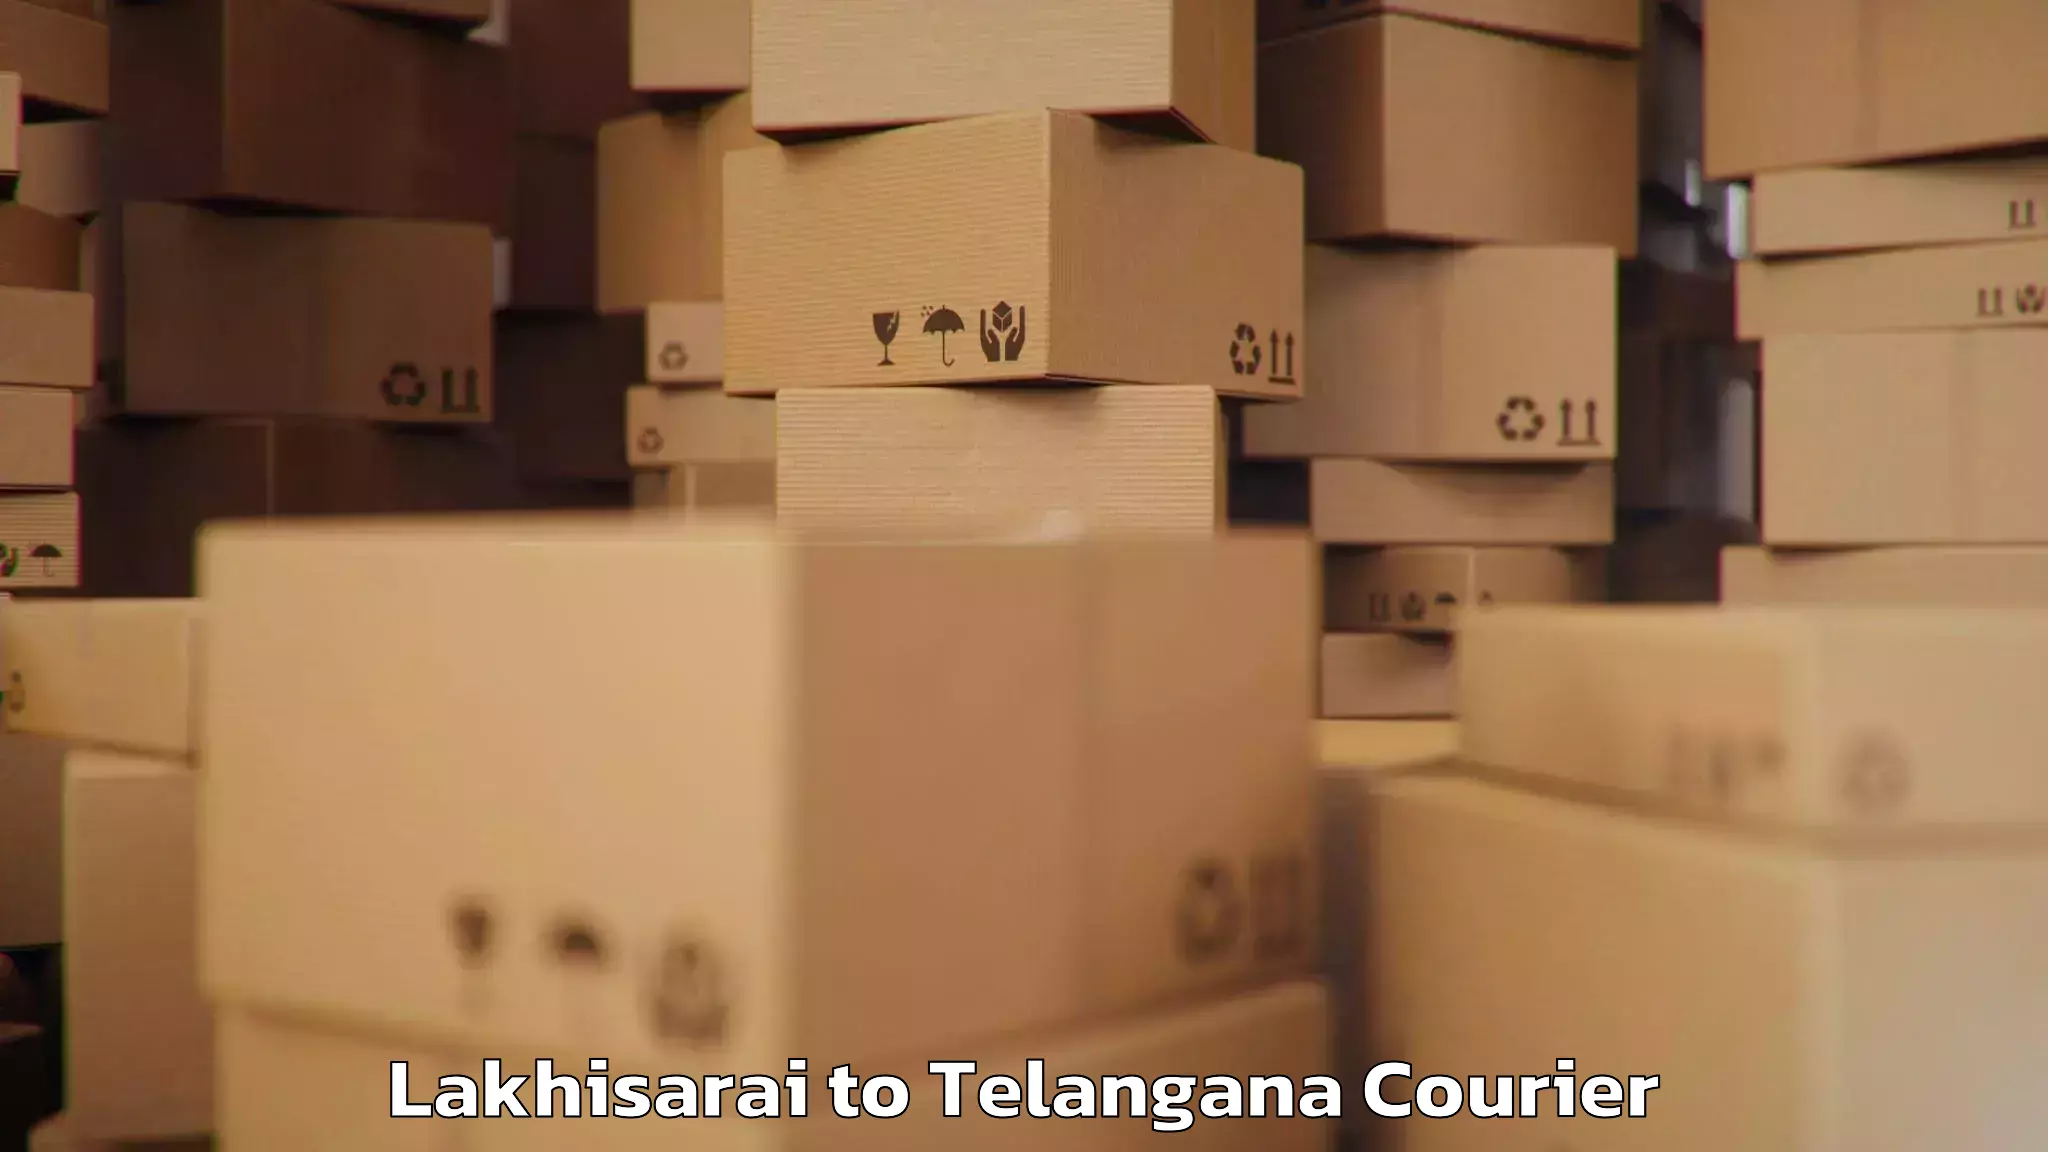 Luggage transport company Lakhisarai to Telangana